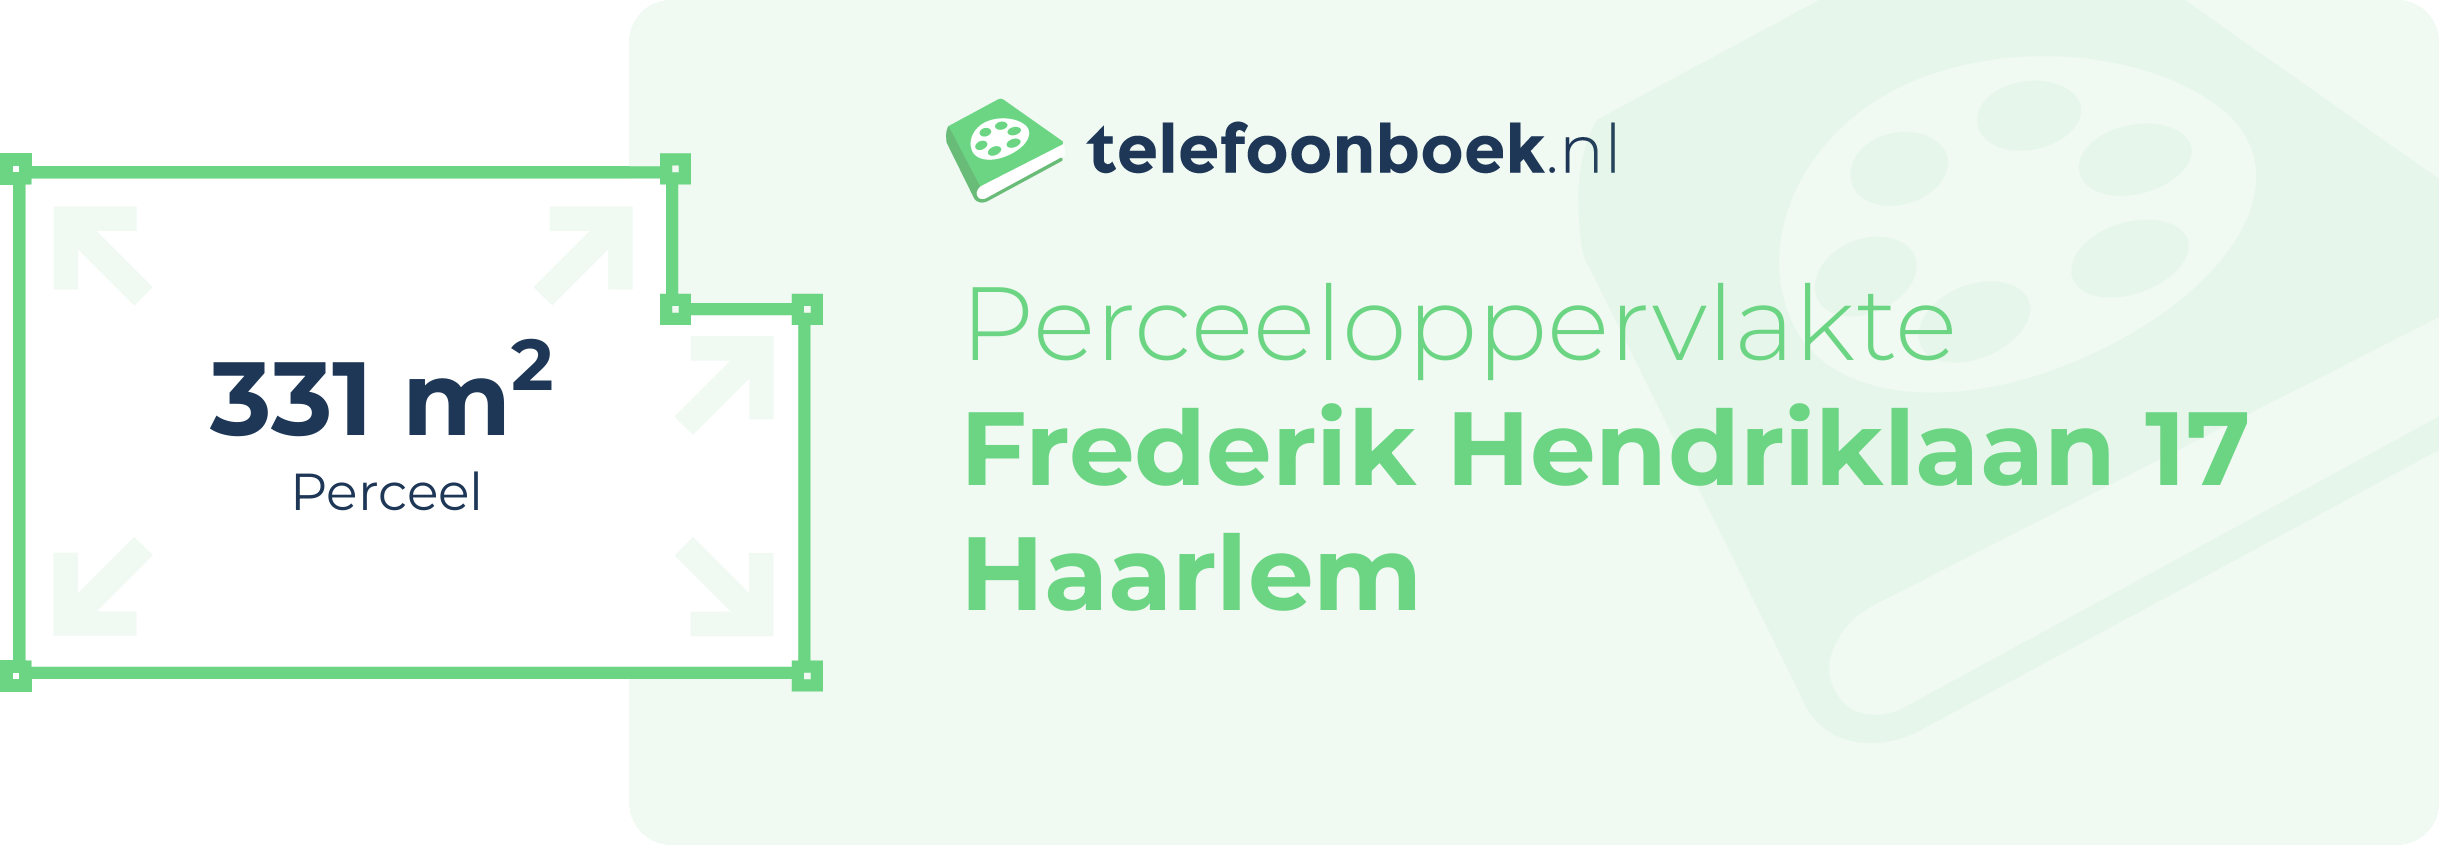 Perceeloppervlakte Frederik Hendriklaan 17 Haarlem